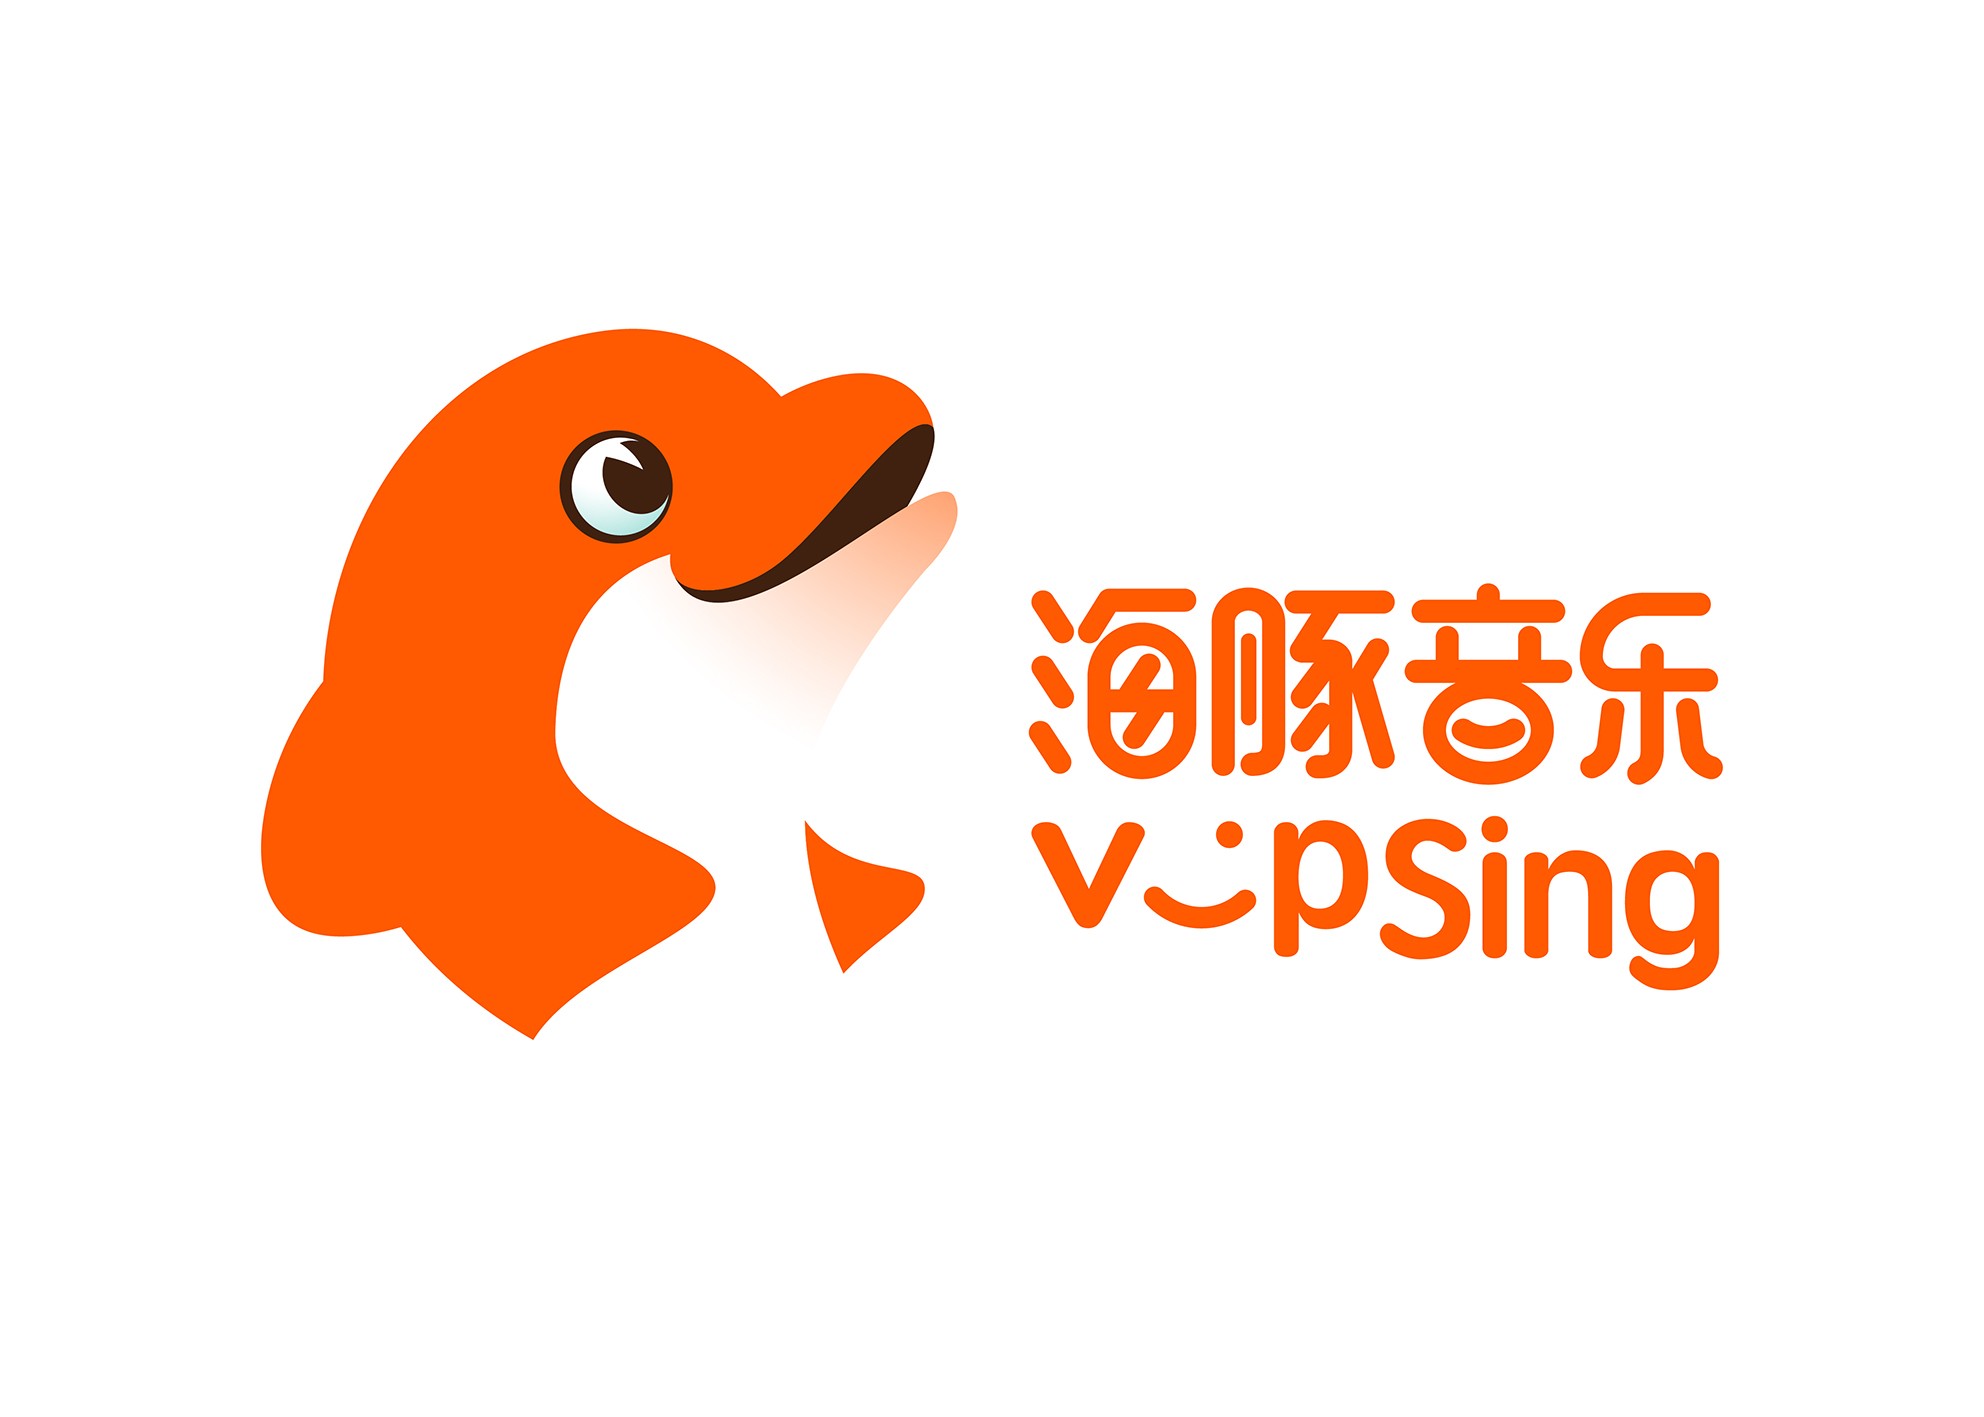  海豚音乐vipSing品牌升级，打造国际化在线音乐教育新理念